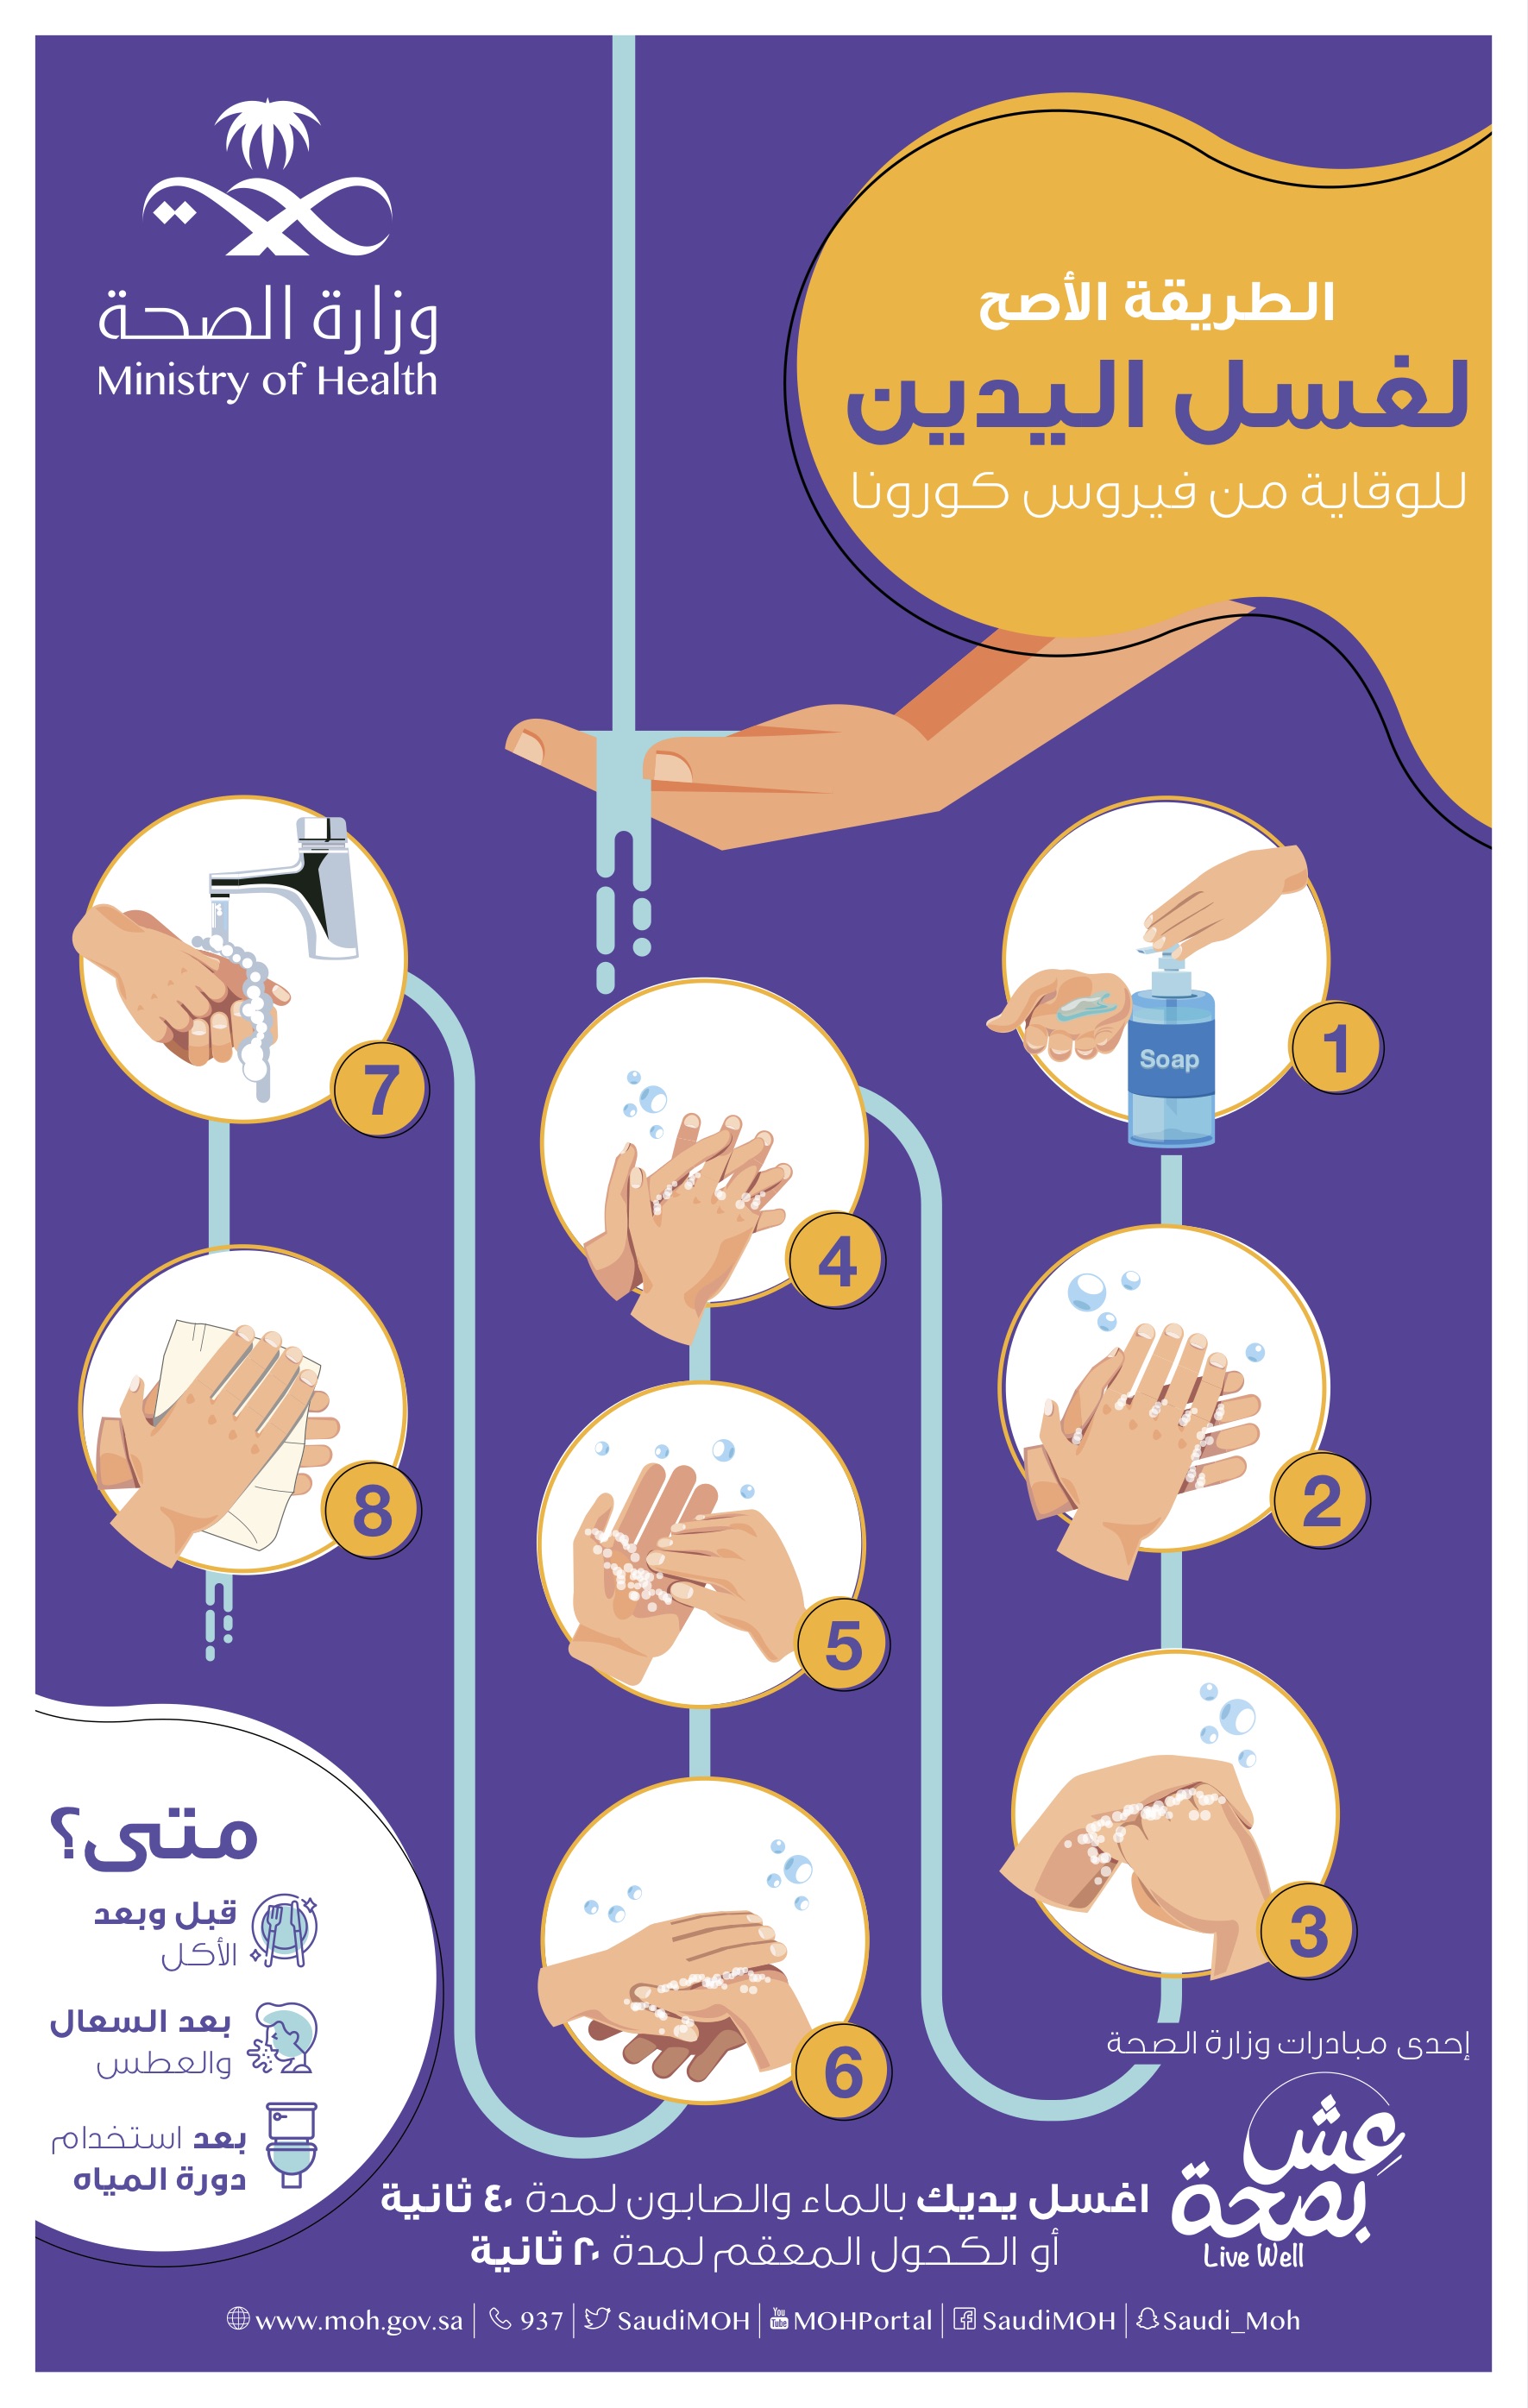 الطريقة الأصح لغسل اليدين